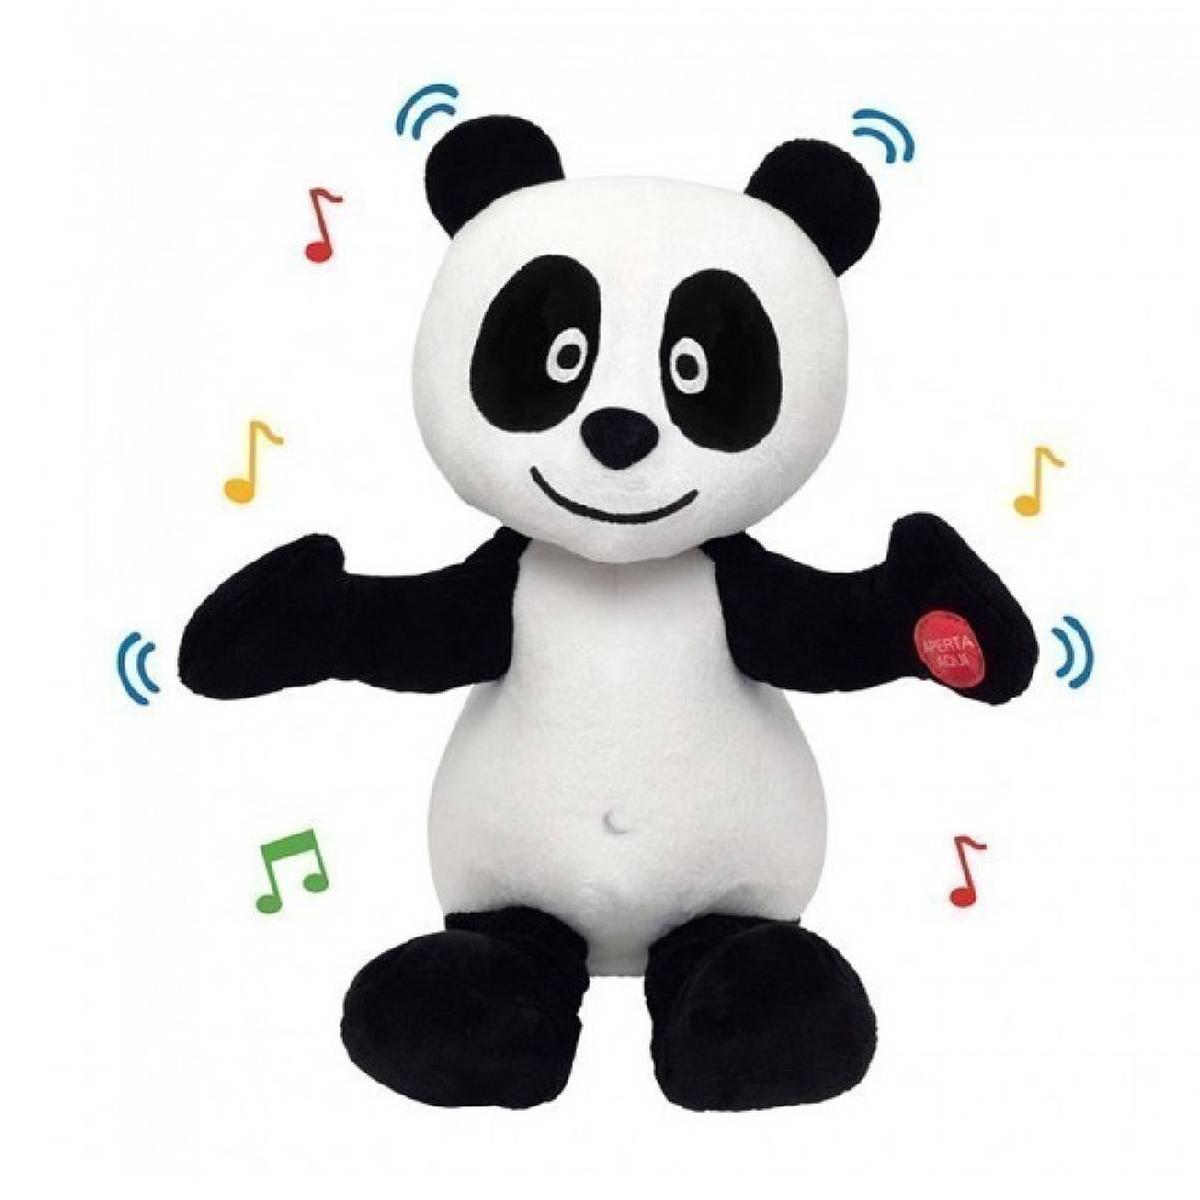 Panda - Peluche Panda bate palmas | Licenças portuguesas | Loja de  brinquedos e videojogos Online Toysrus